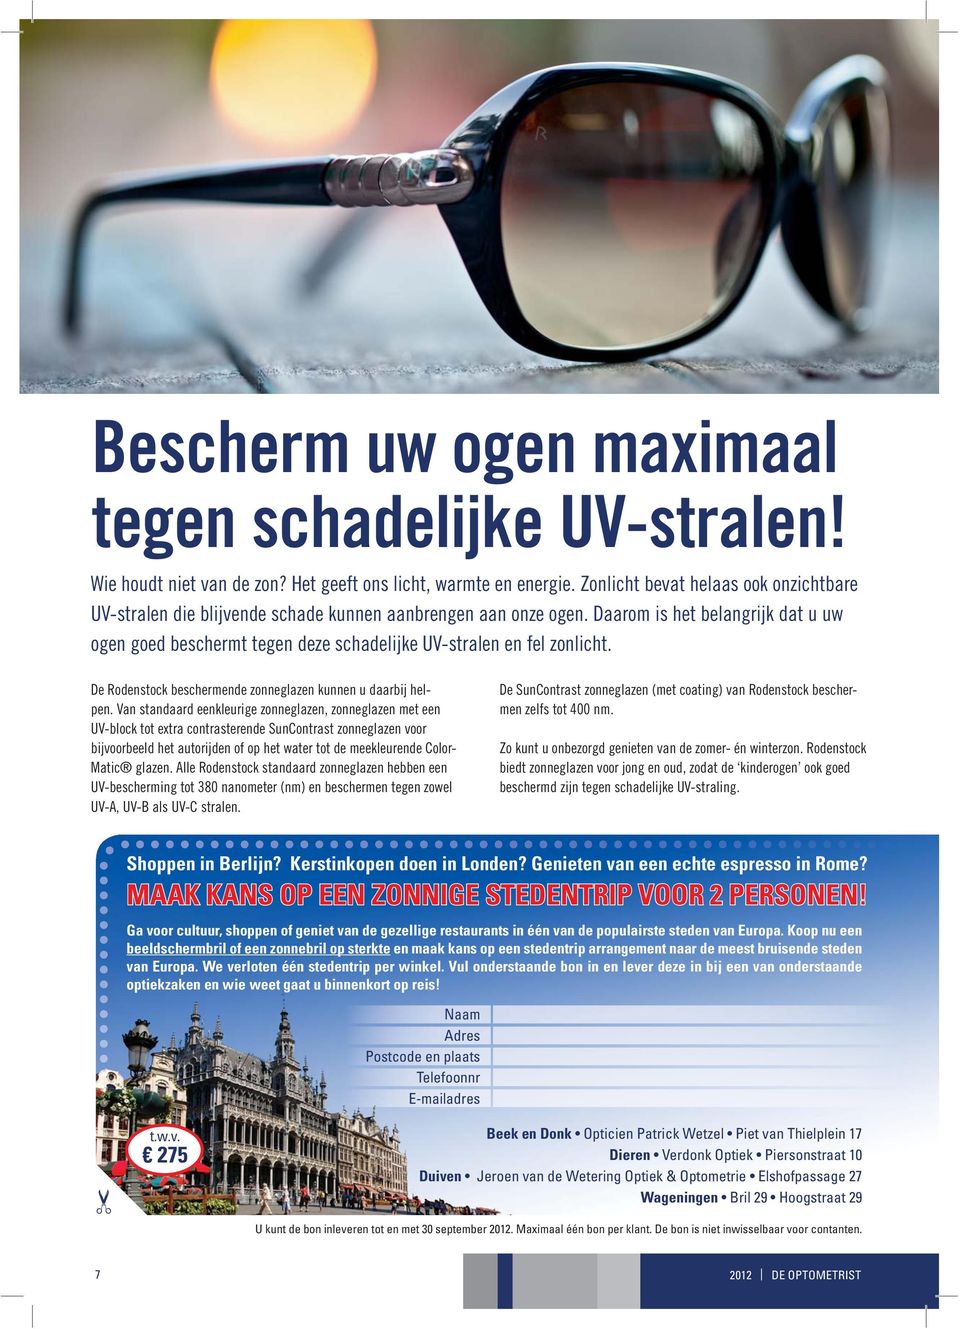 Daarom is het belangrijk dat u uw ogen goed beschermt tegen deze schadelijke UV-stralen en fel zonlicht. De Rodenstock beschermende zonneglazen kunnen u daarbij helpen.